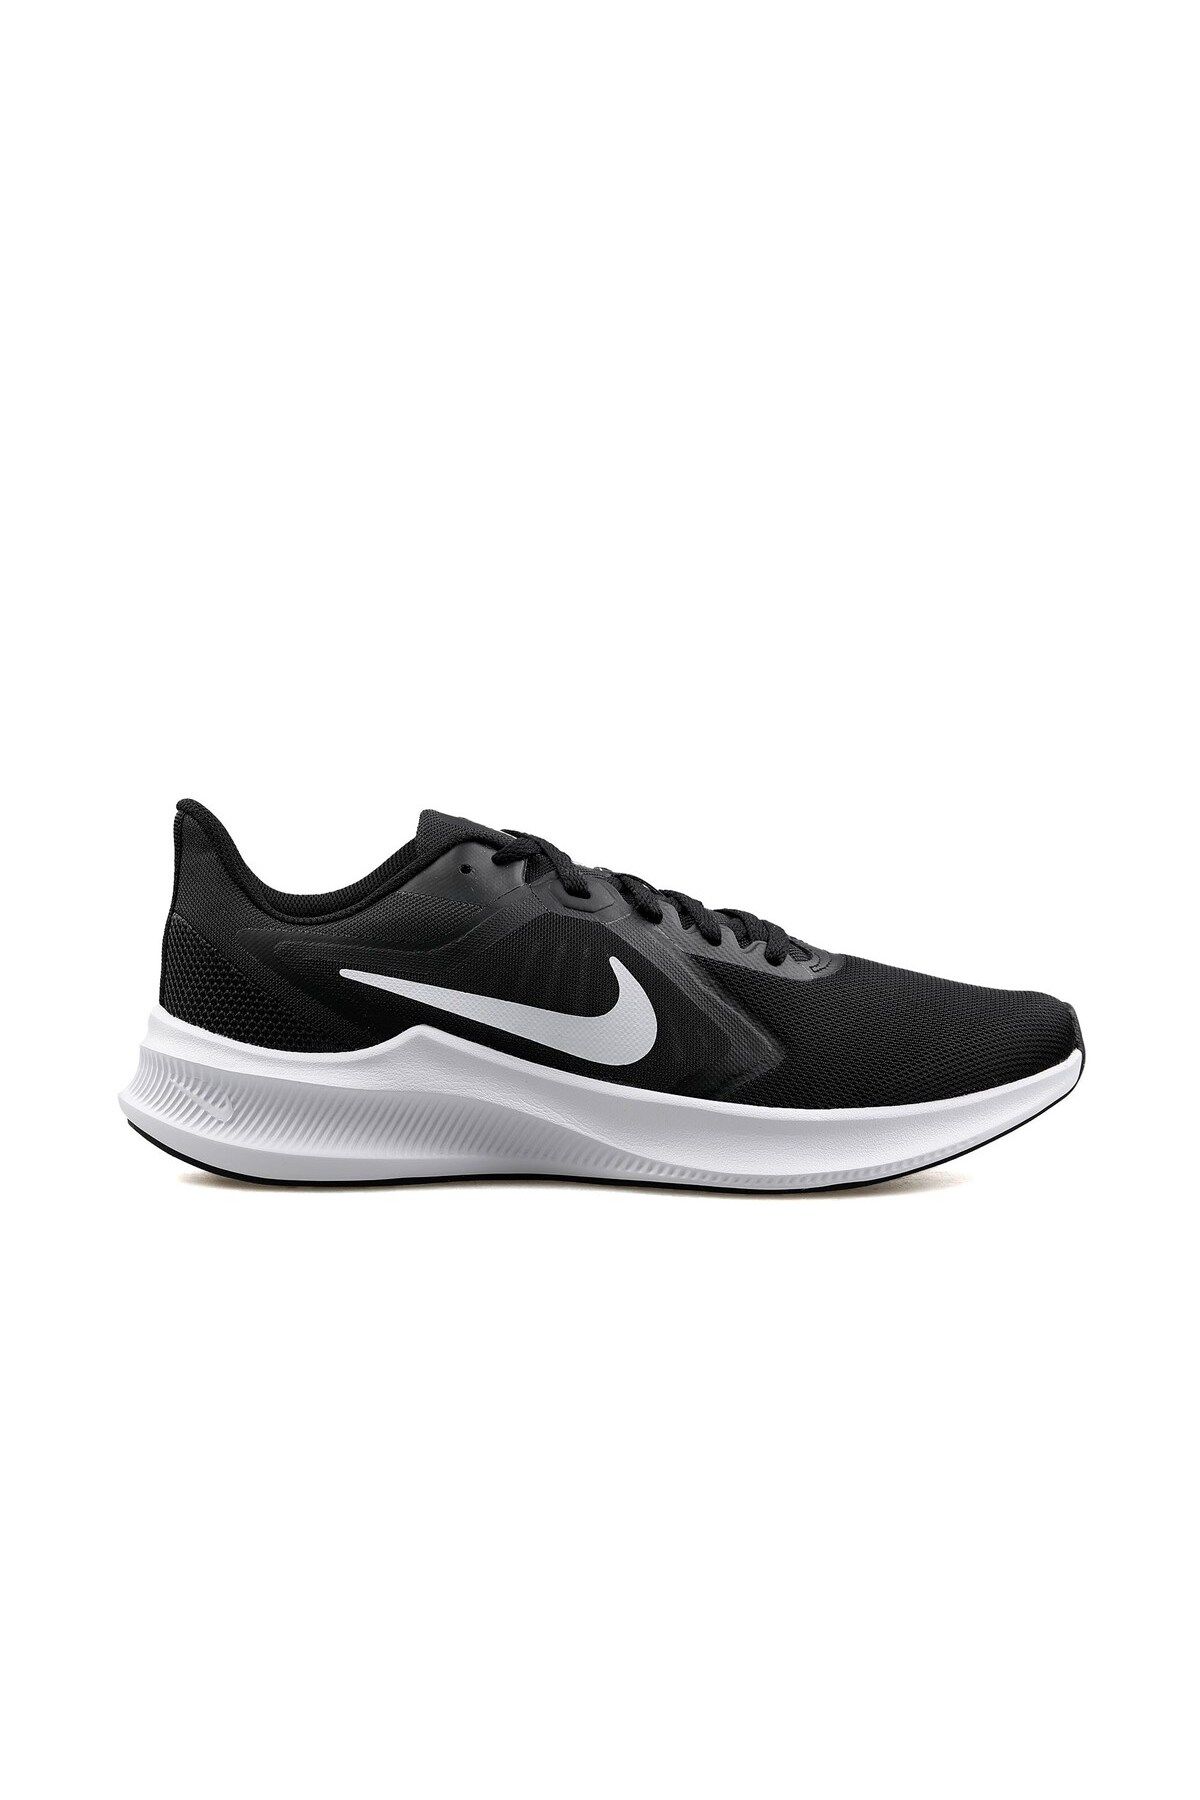 Nike Downshıfter 10 Erkek Günlük Ayakkabı Cı9981-004